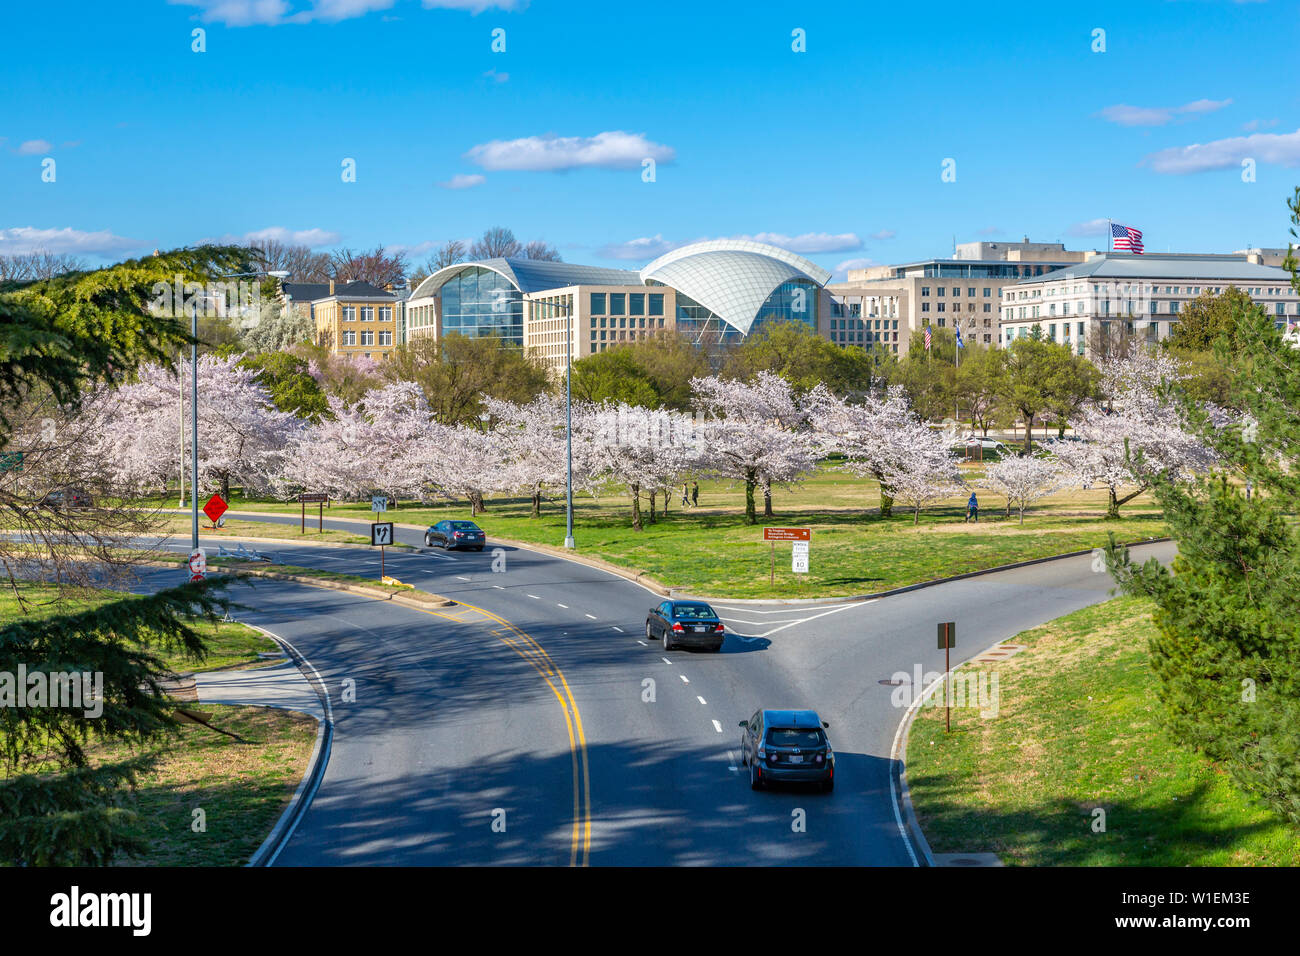 Blick auf United States Institut für Frieden, Washington D.C., Vereinigte Staaten von Amerika, Nordamerika Stockfoto